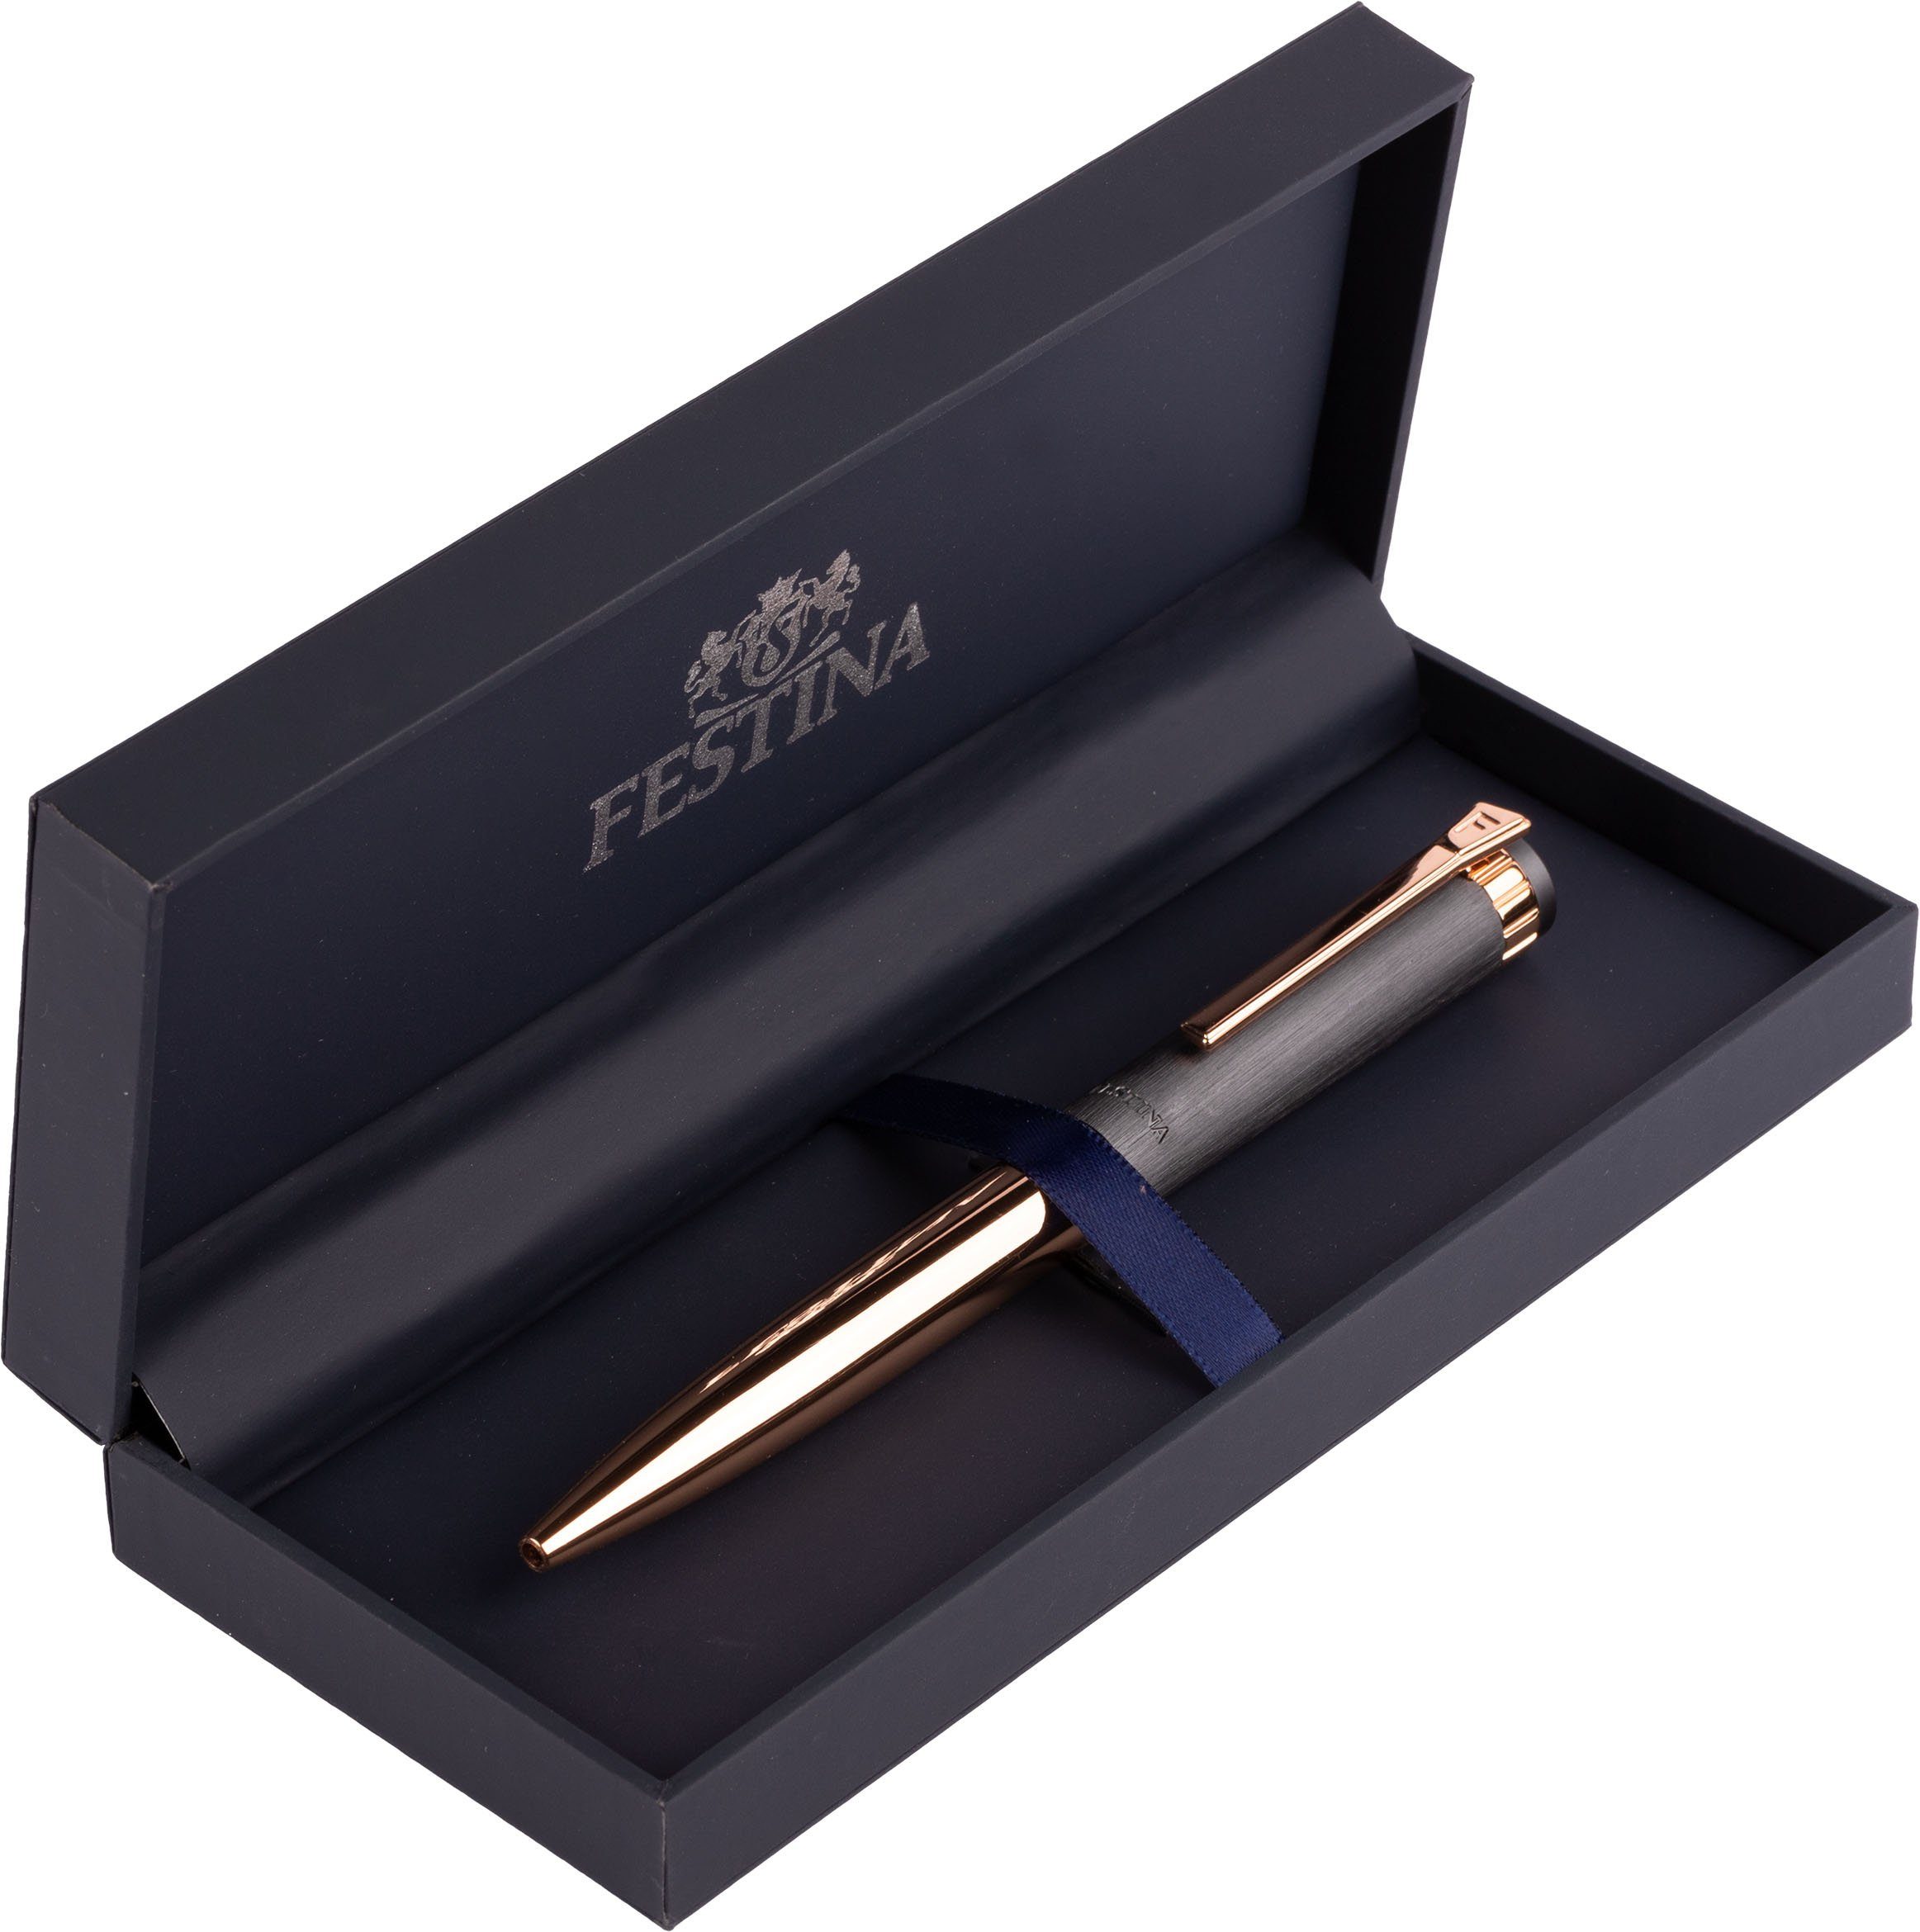 Kugelschreiber inklusive Festina auch Prestige, Geschenk FWS4107/D, Etui, als ideal